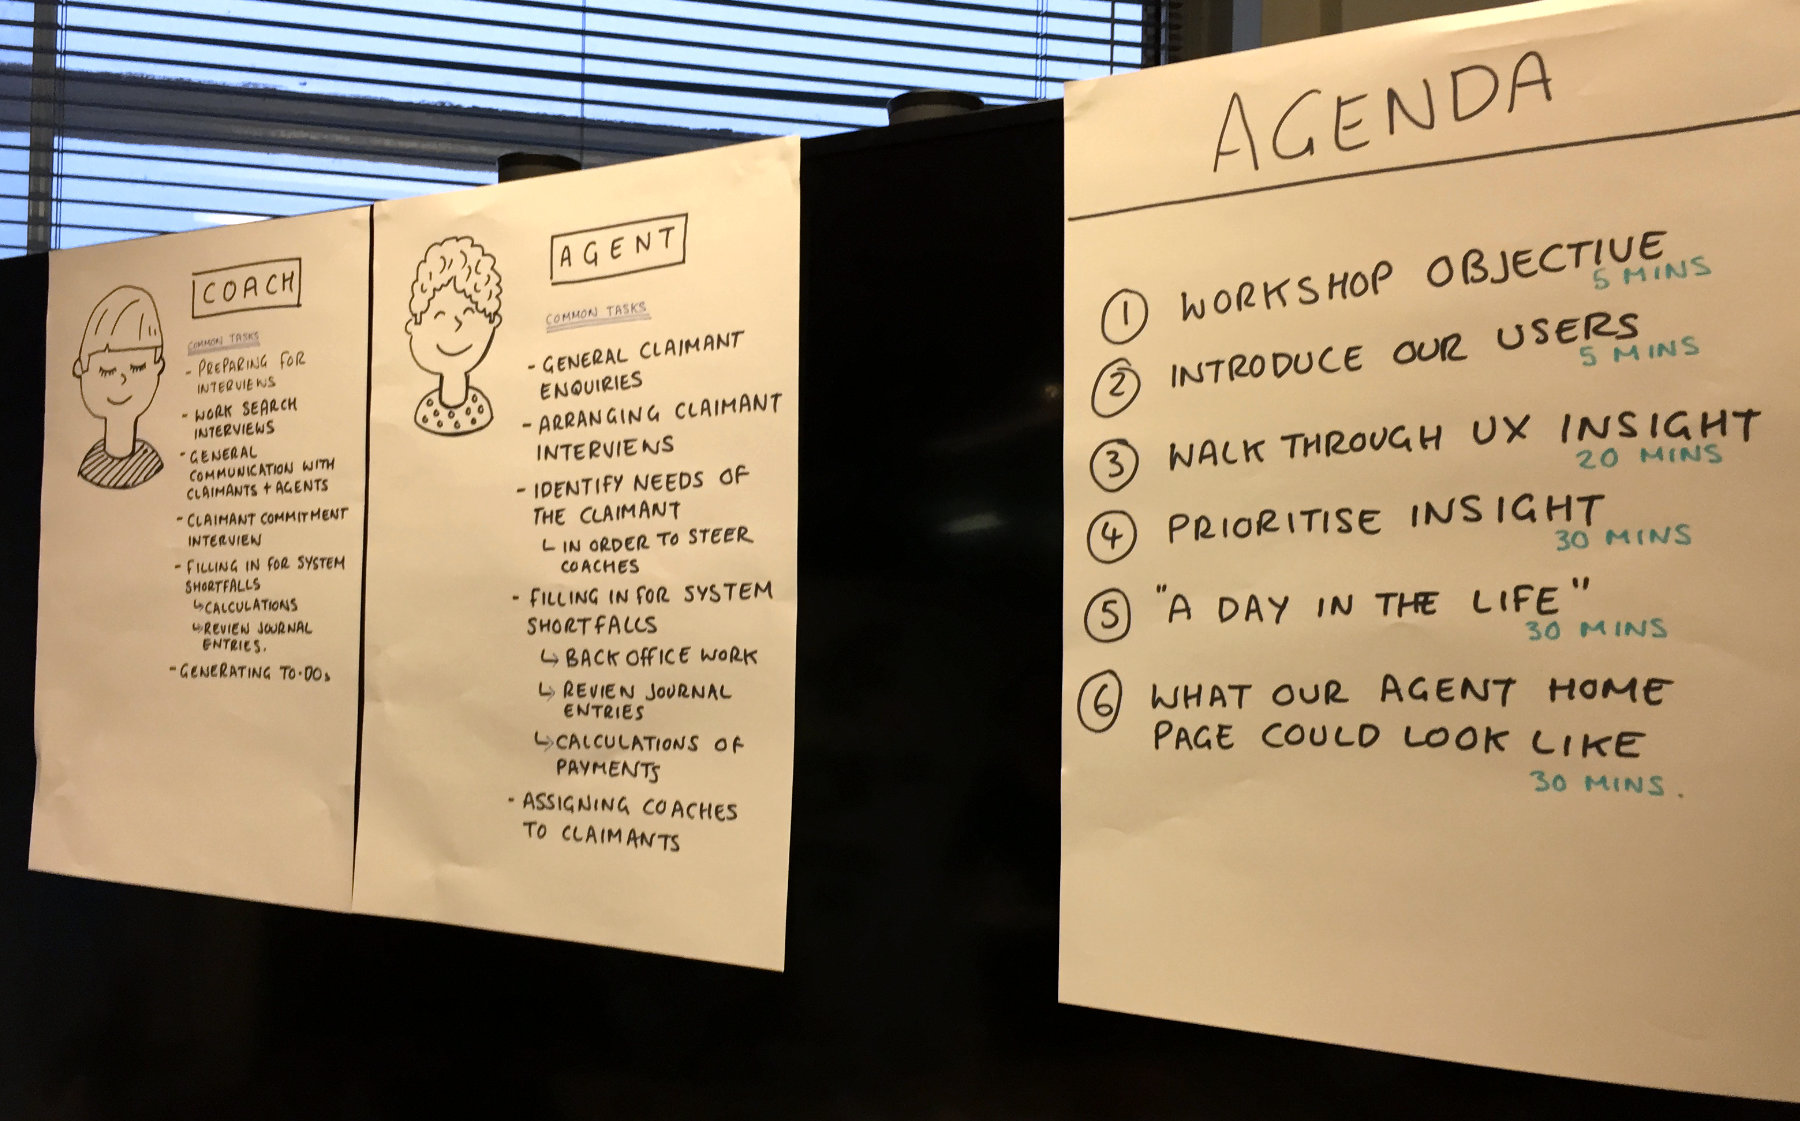 Image: [Fig 3] Workshop agenda